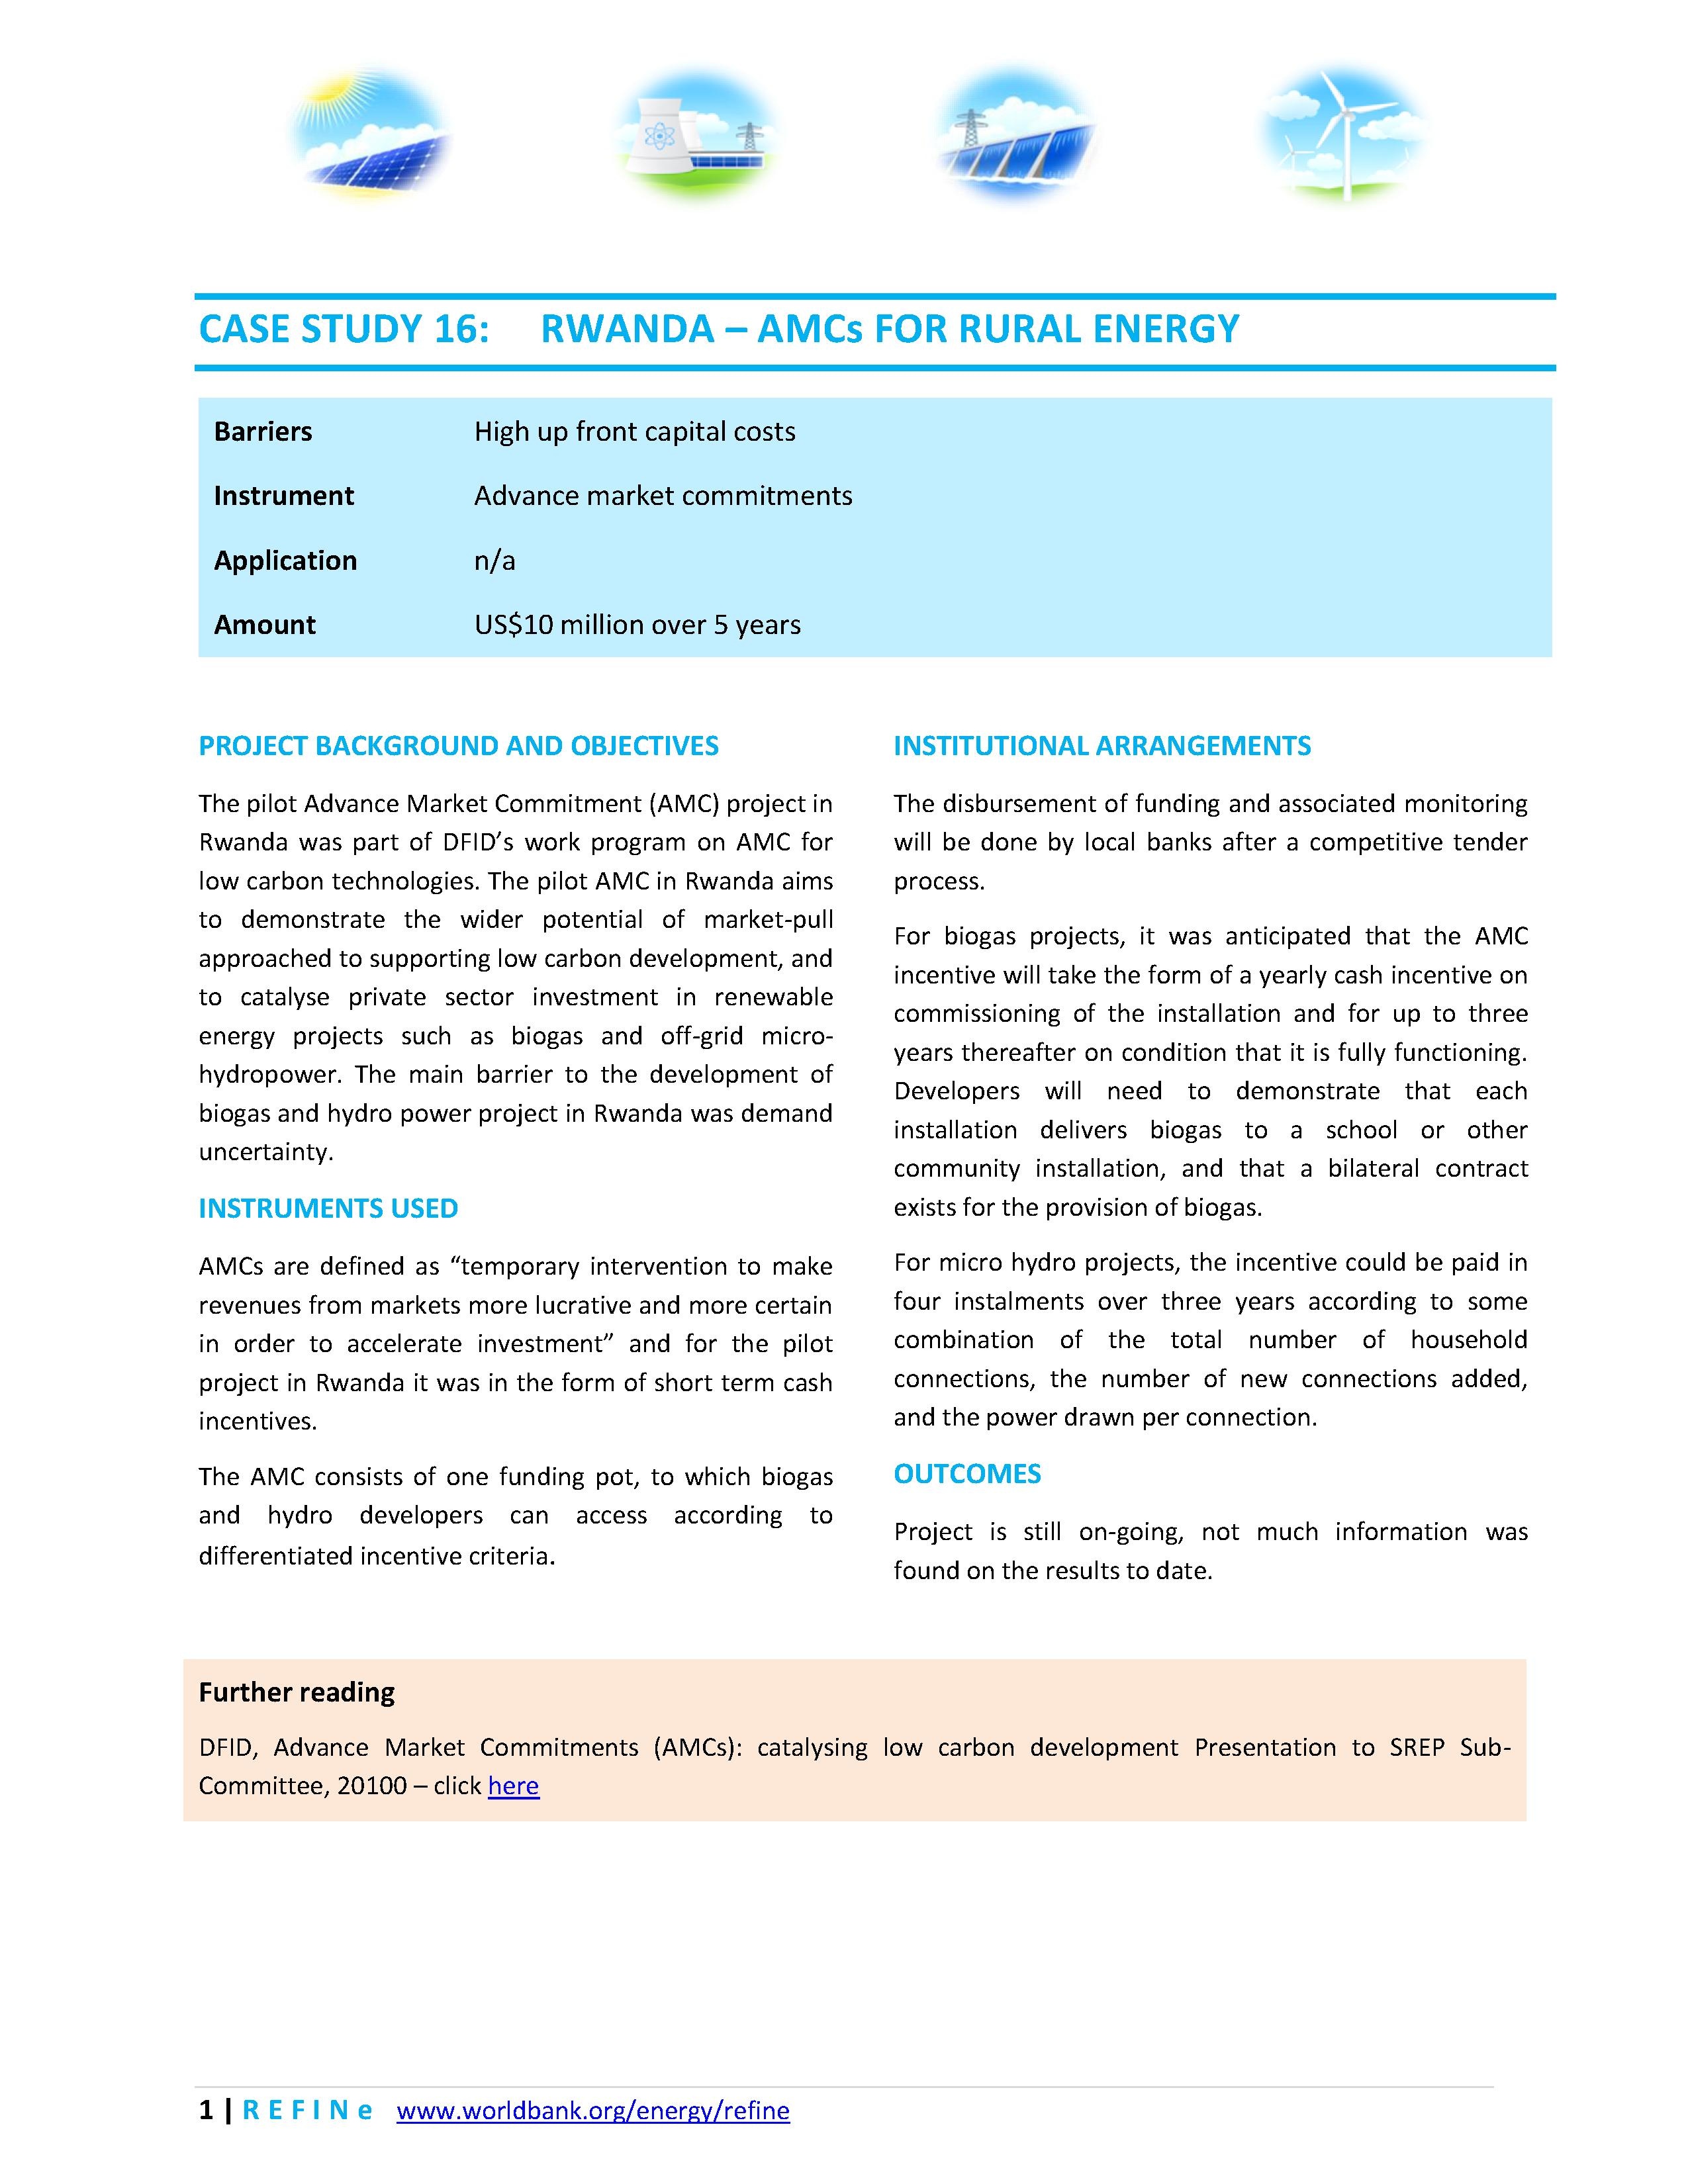 File:Rwanda AMCs for Rural Energy.pdf